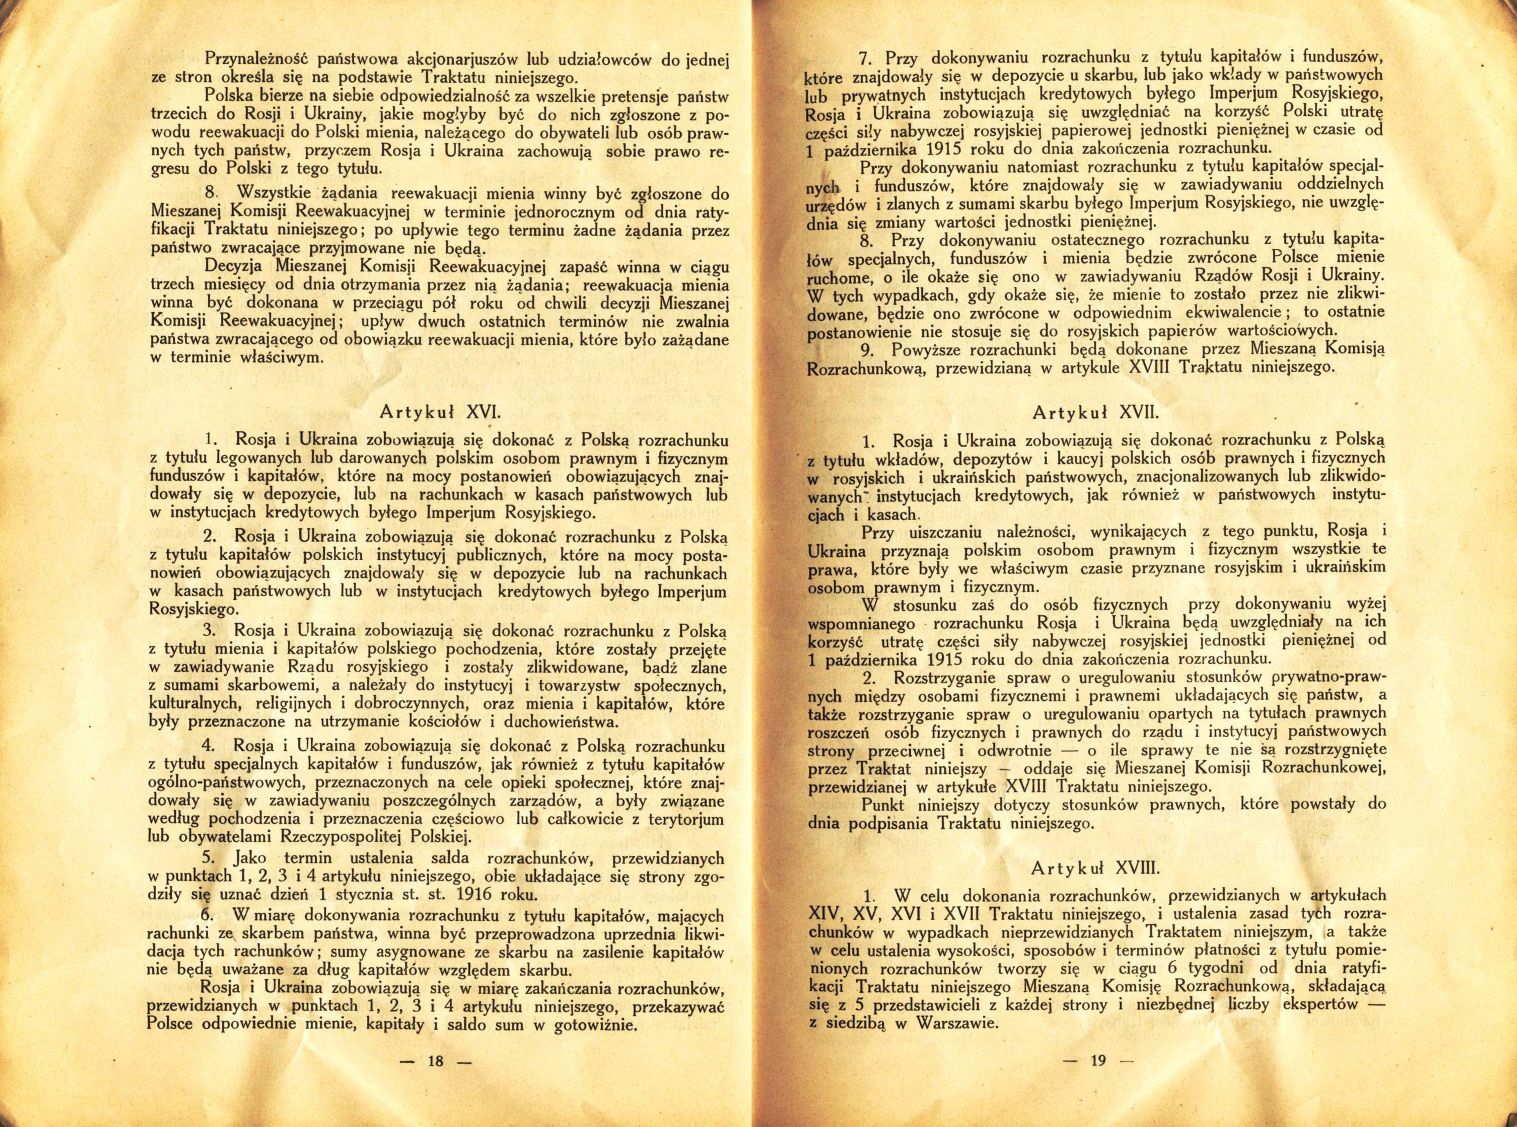 Traktat Pokoju między Polską a Rosją i Ukrainą podpisany w Rydze dnia 18 marca 1921 roku, s. 18-19, Akta Jana Dąbskiego, sygn. 5